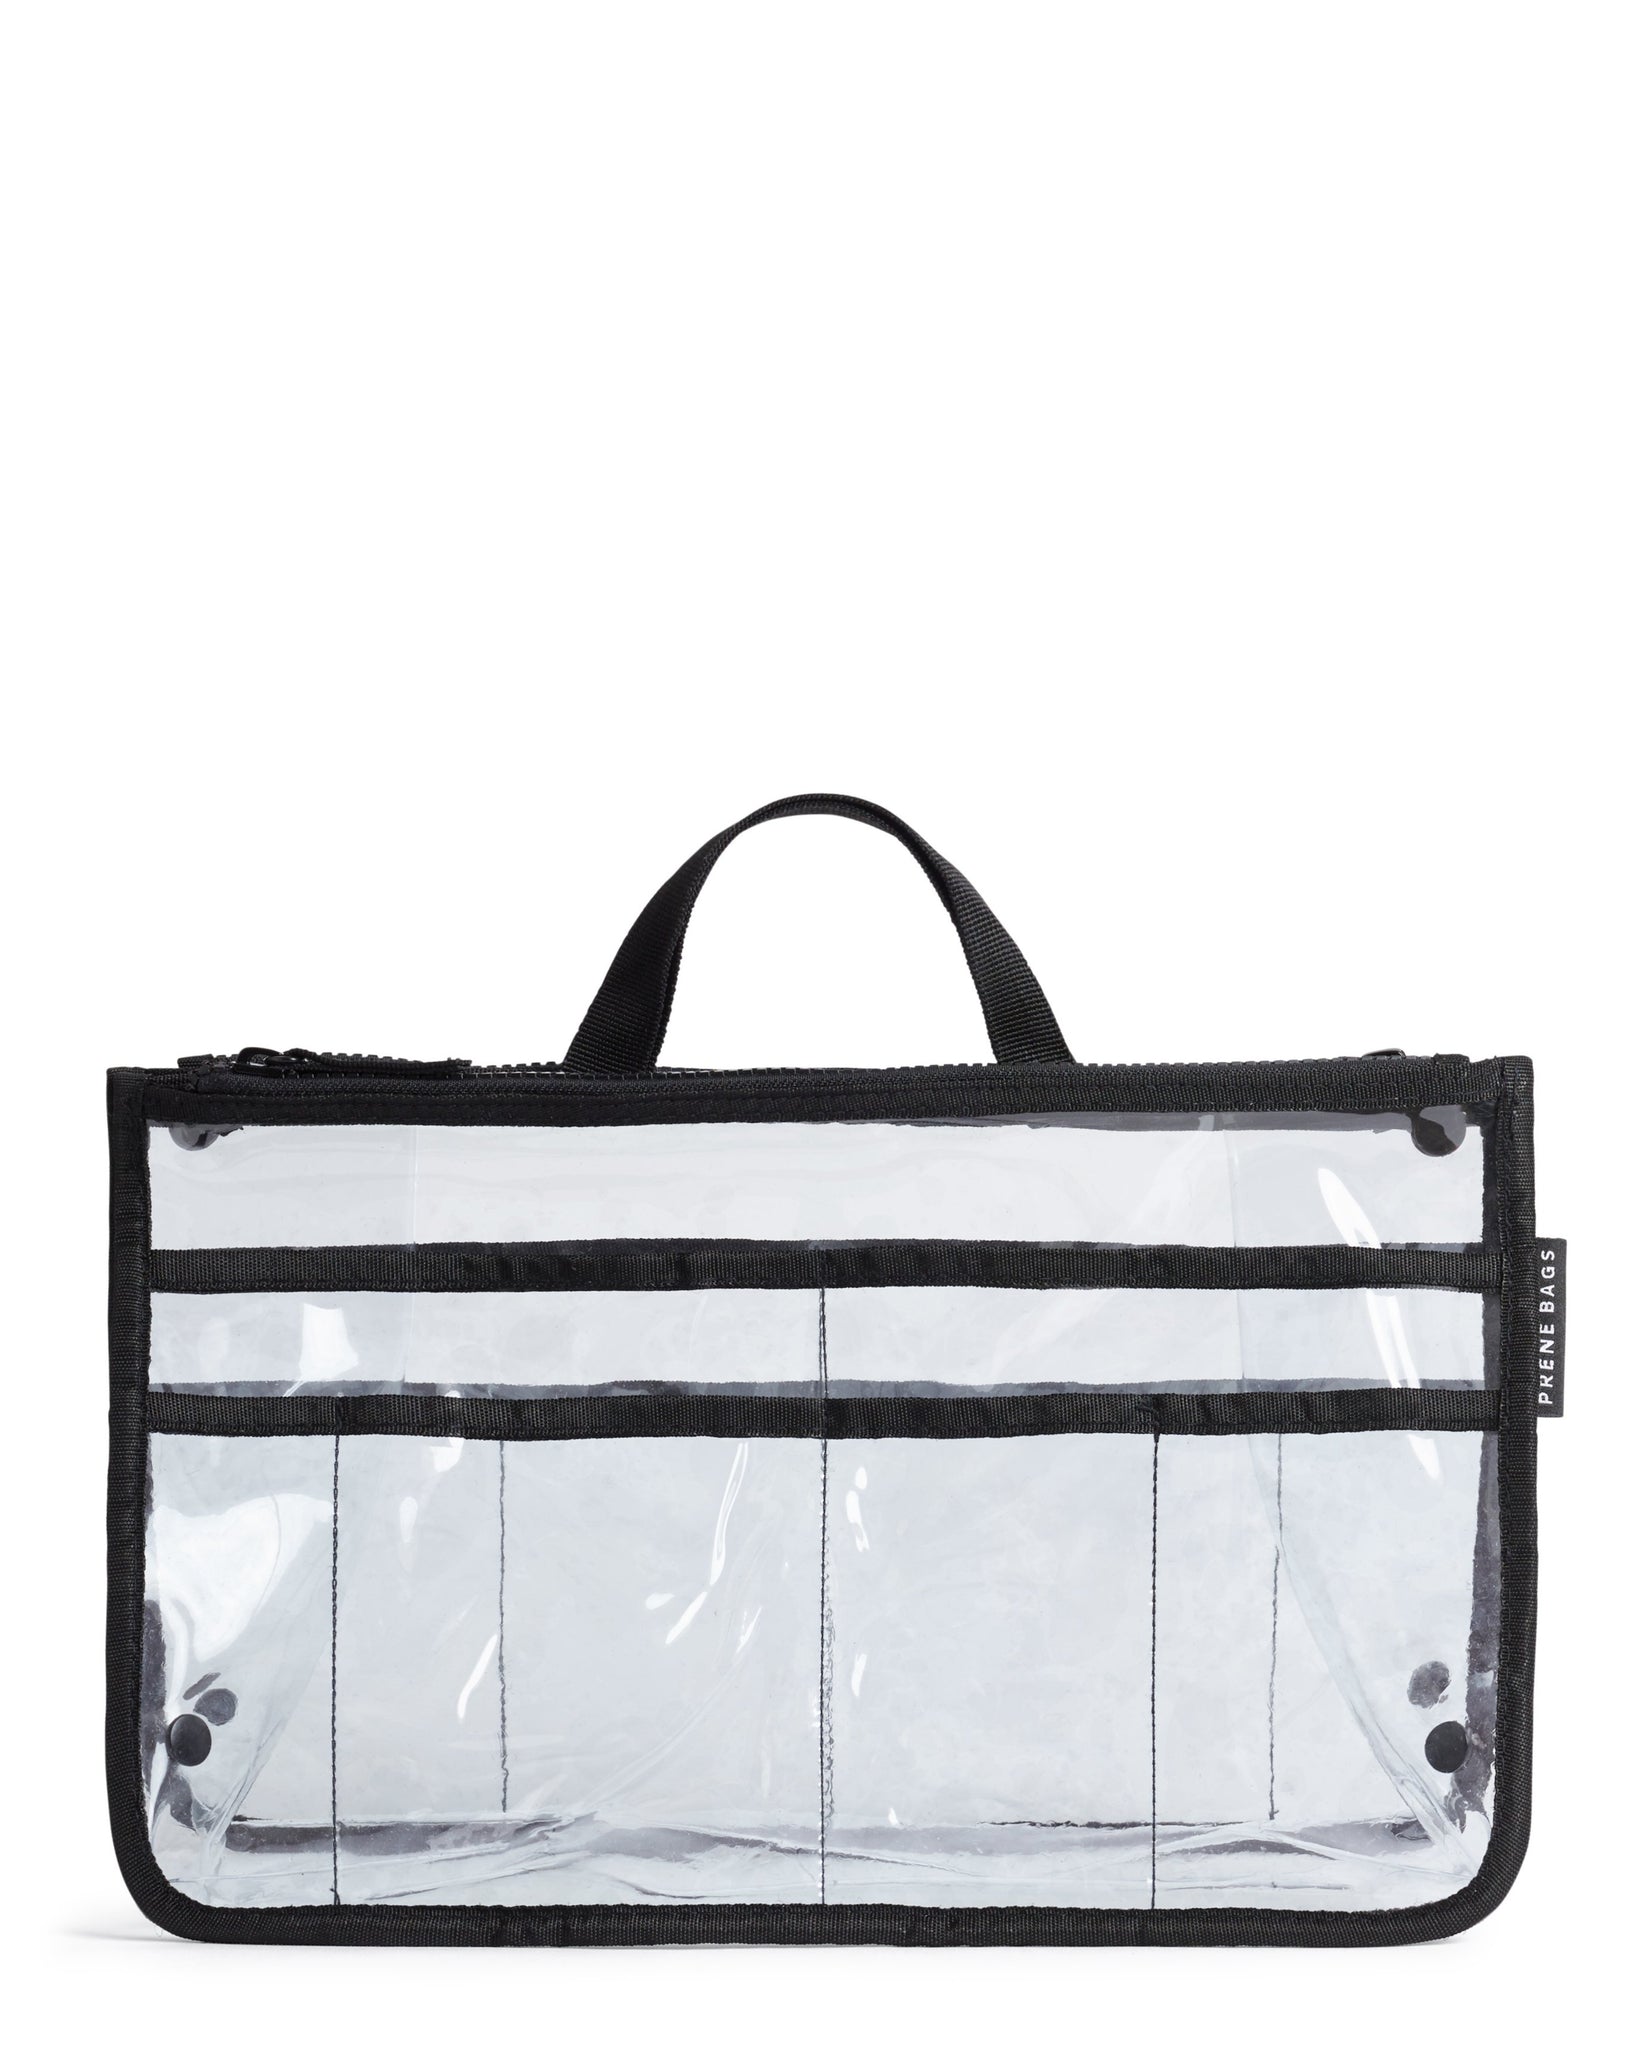 Bag Organizer / Organiser Insert (BLACK) – Prene